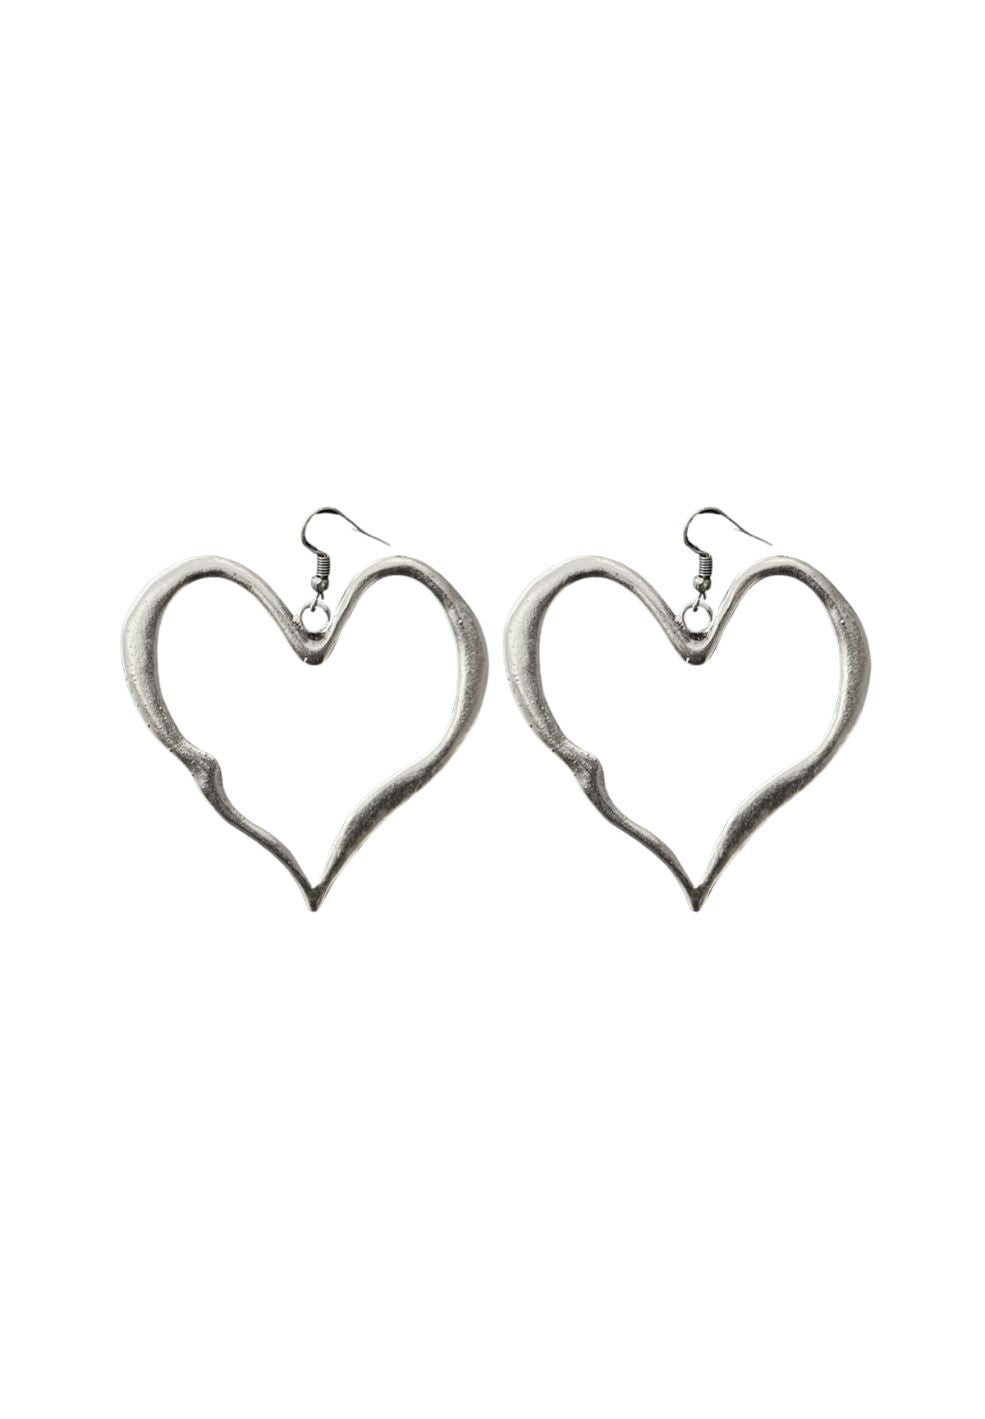 Melted Heart Earrings Silver